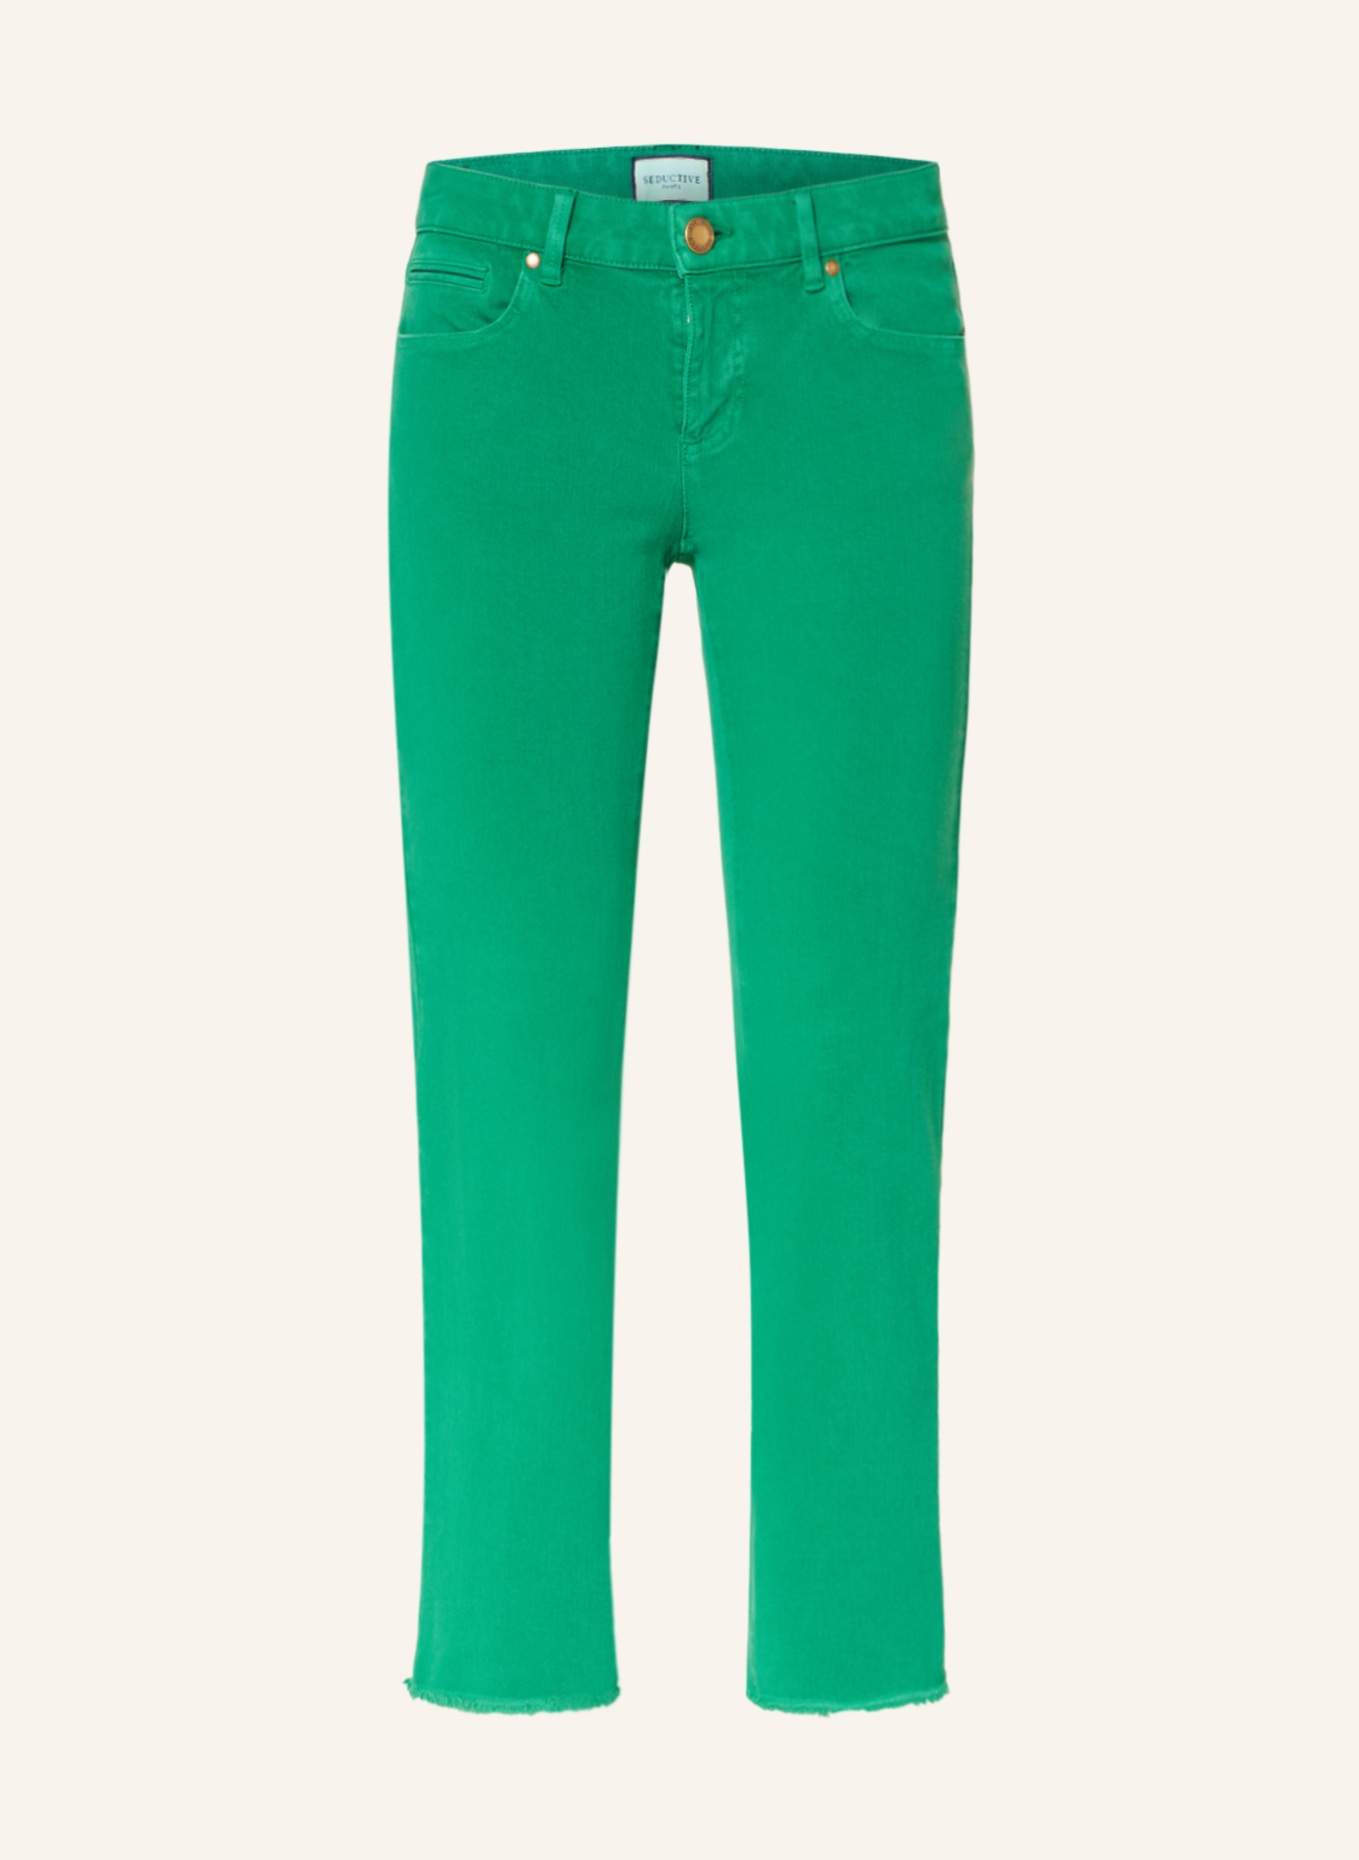 SEDUCTIVE Jeans CLAIRE , Farbe: 739 raising green (Bild 1)